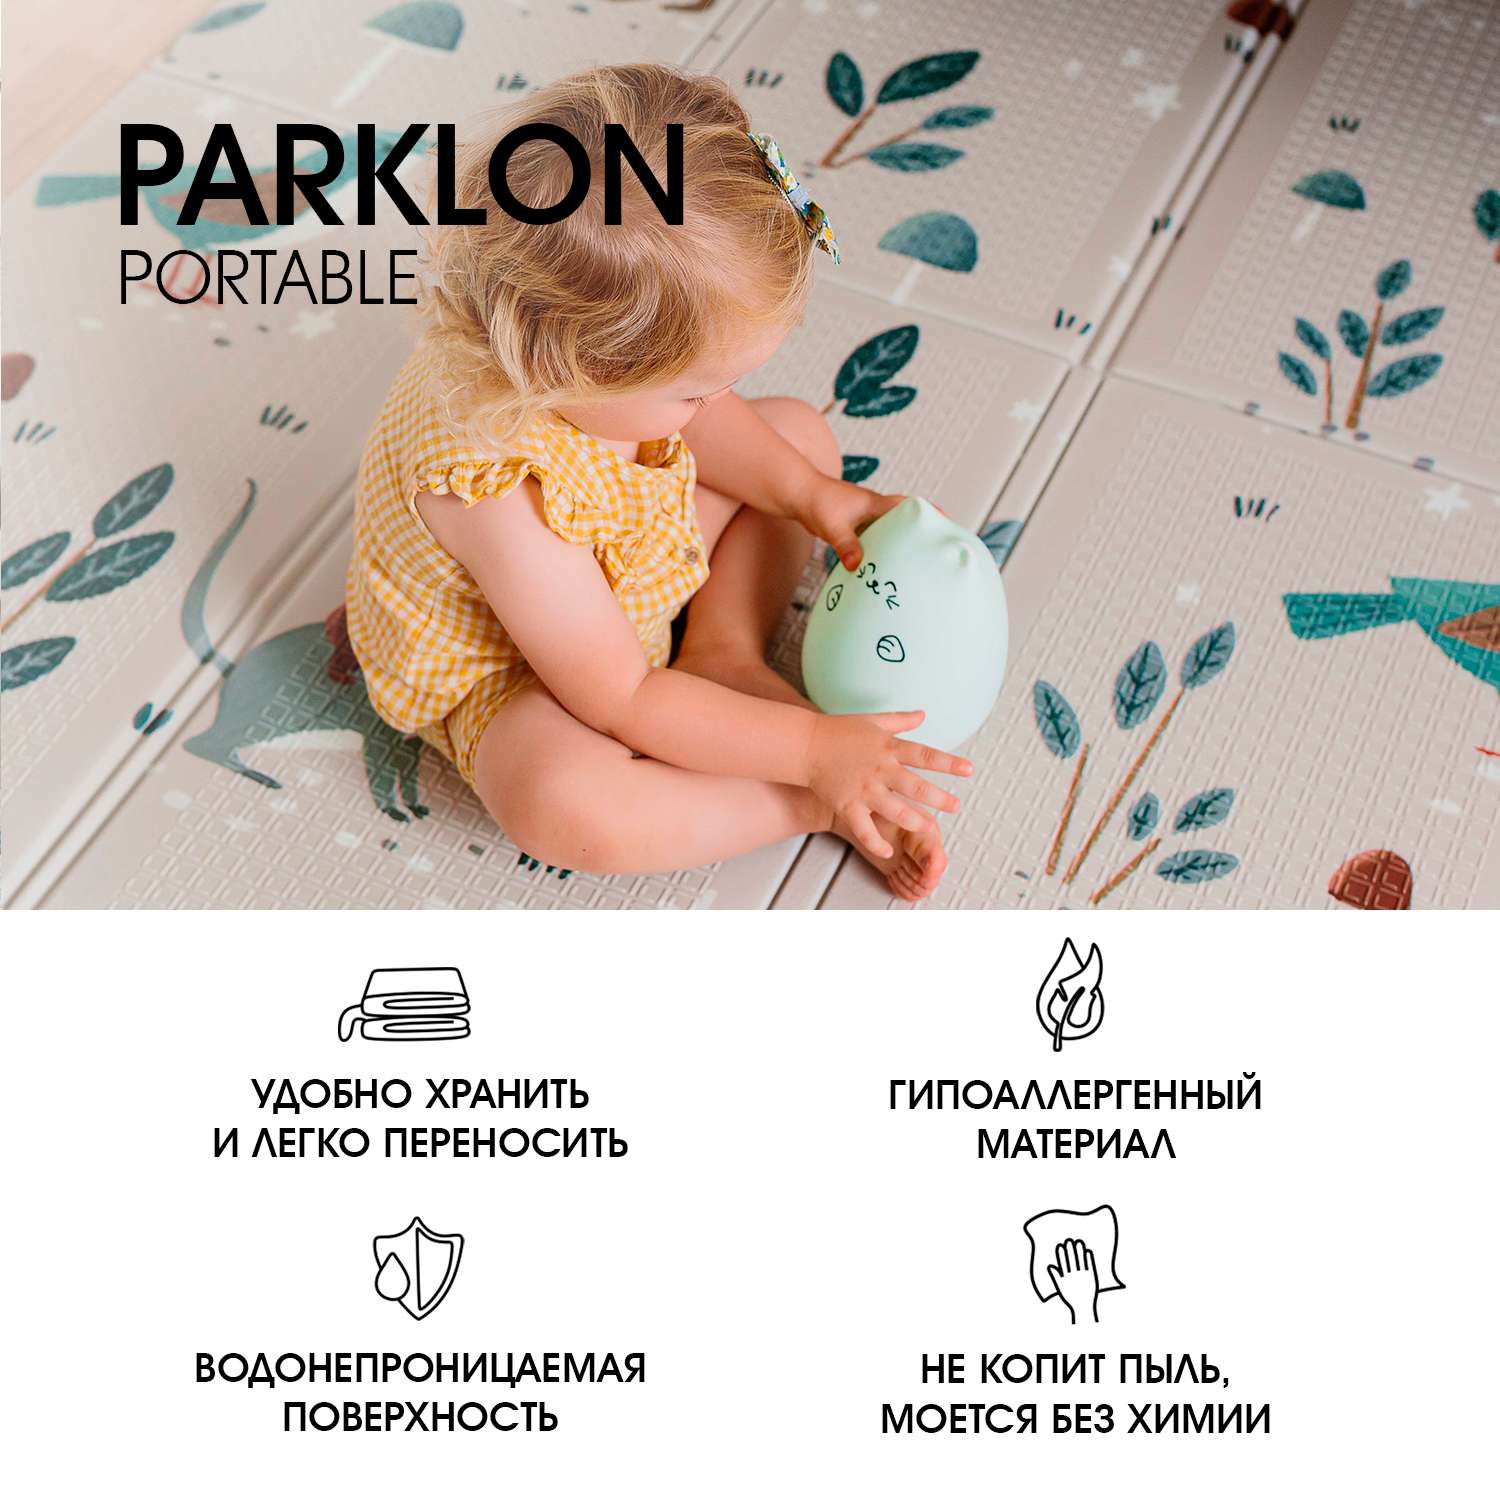 Складной детский коврик PARKLON Portable Милые гномы - фото 3